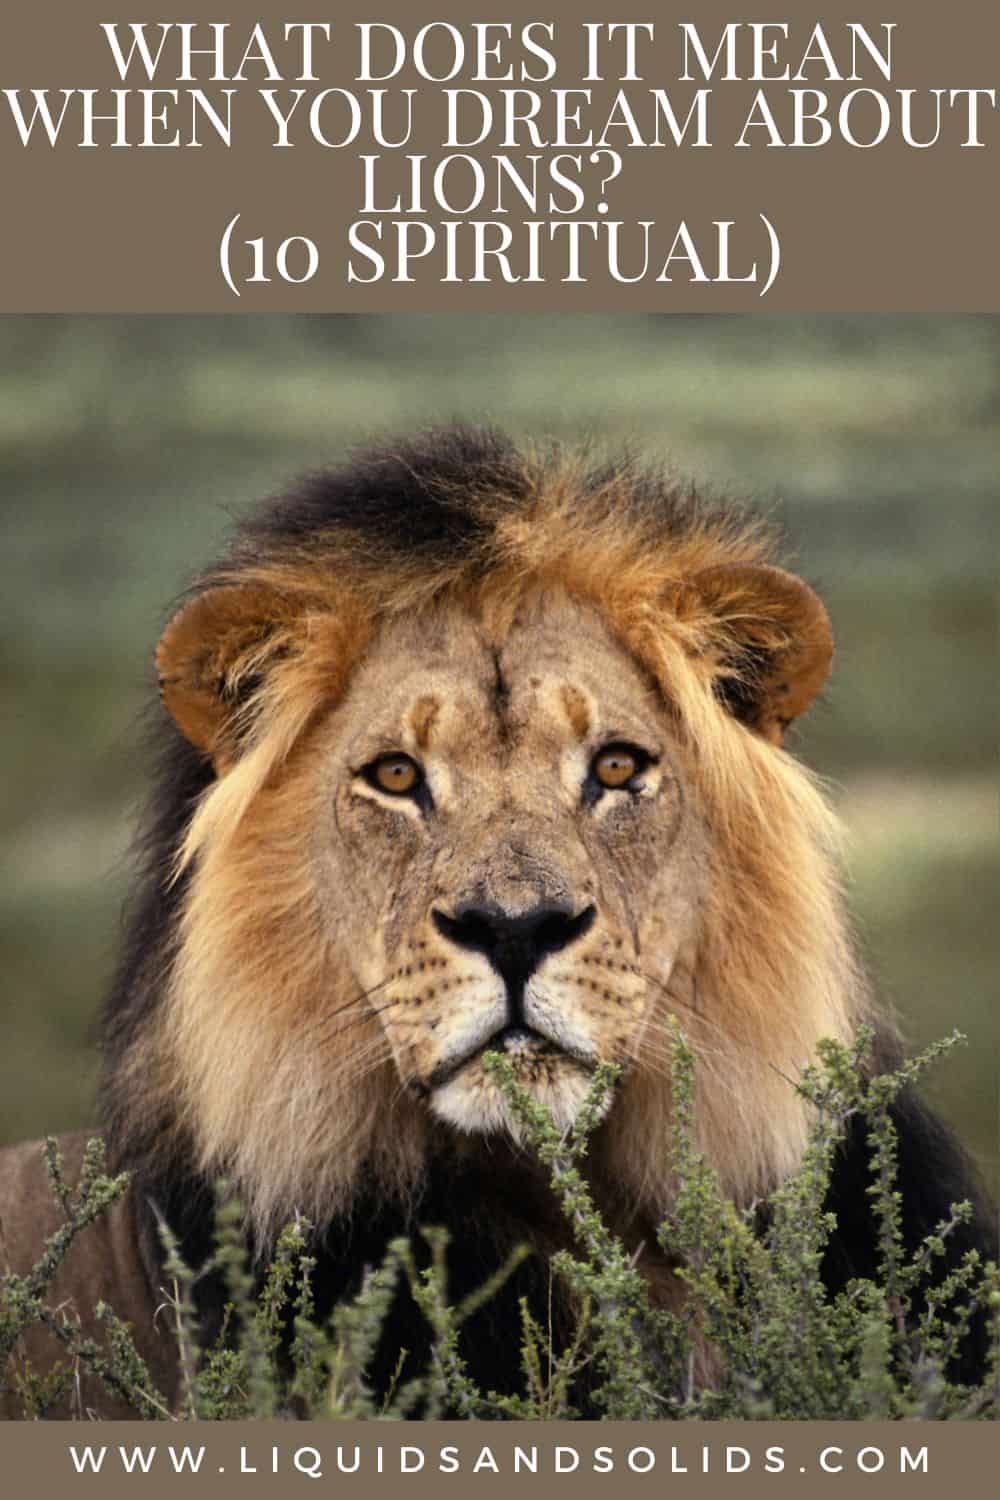  Mit jelent, ha oroszlánokról álmodsz? (10 spirituális jelentés)